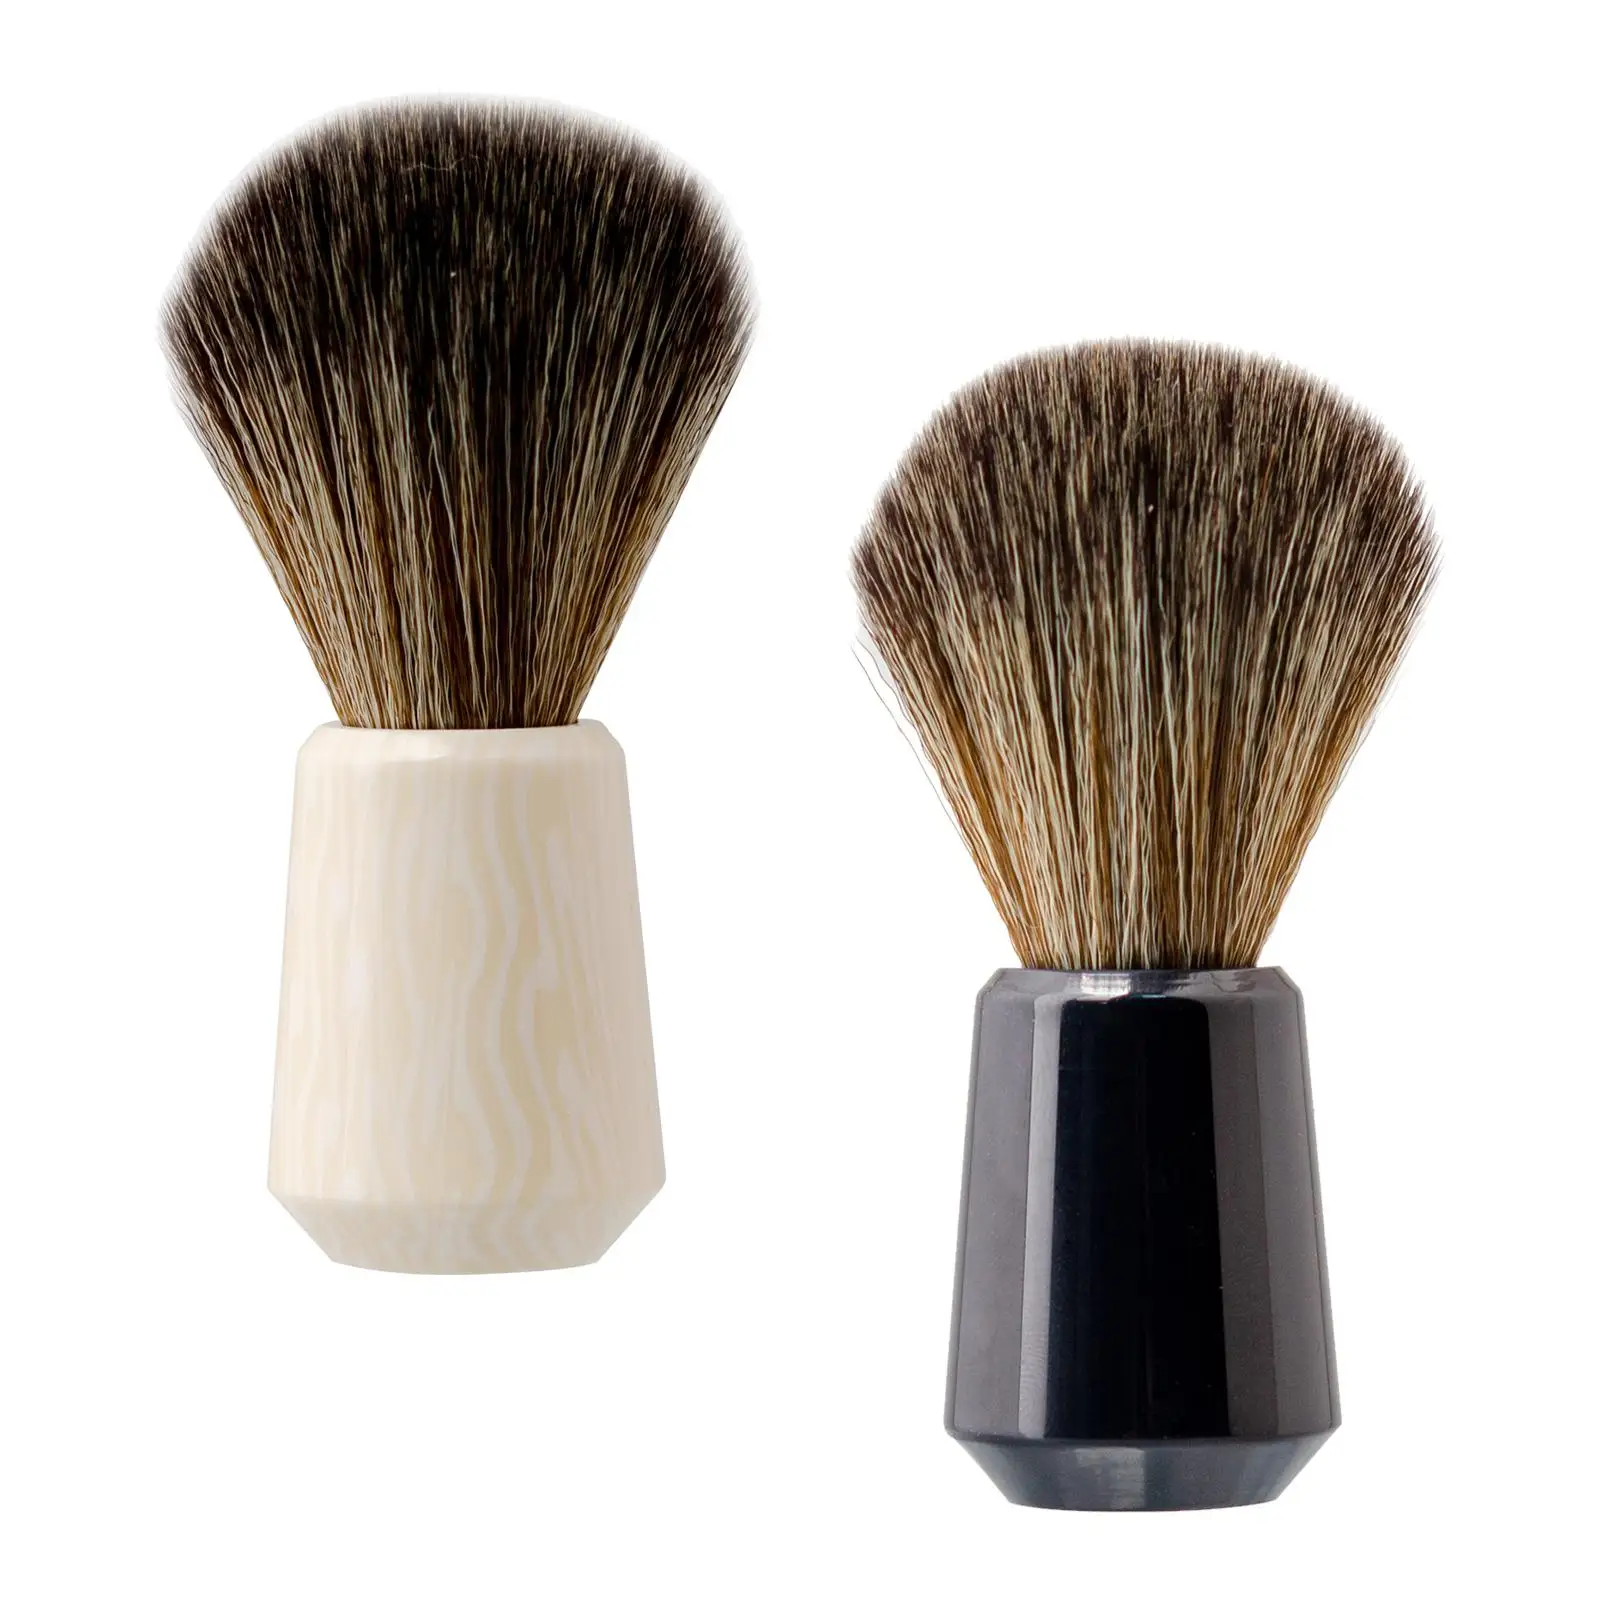 Shaving Brush Cream Soap Brush for Father, Husband Shaving Accessory Nylon Bristles Resin Handle for Travel Hair Salon Home